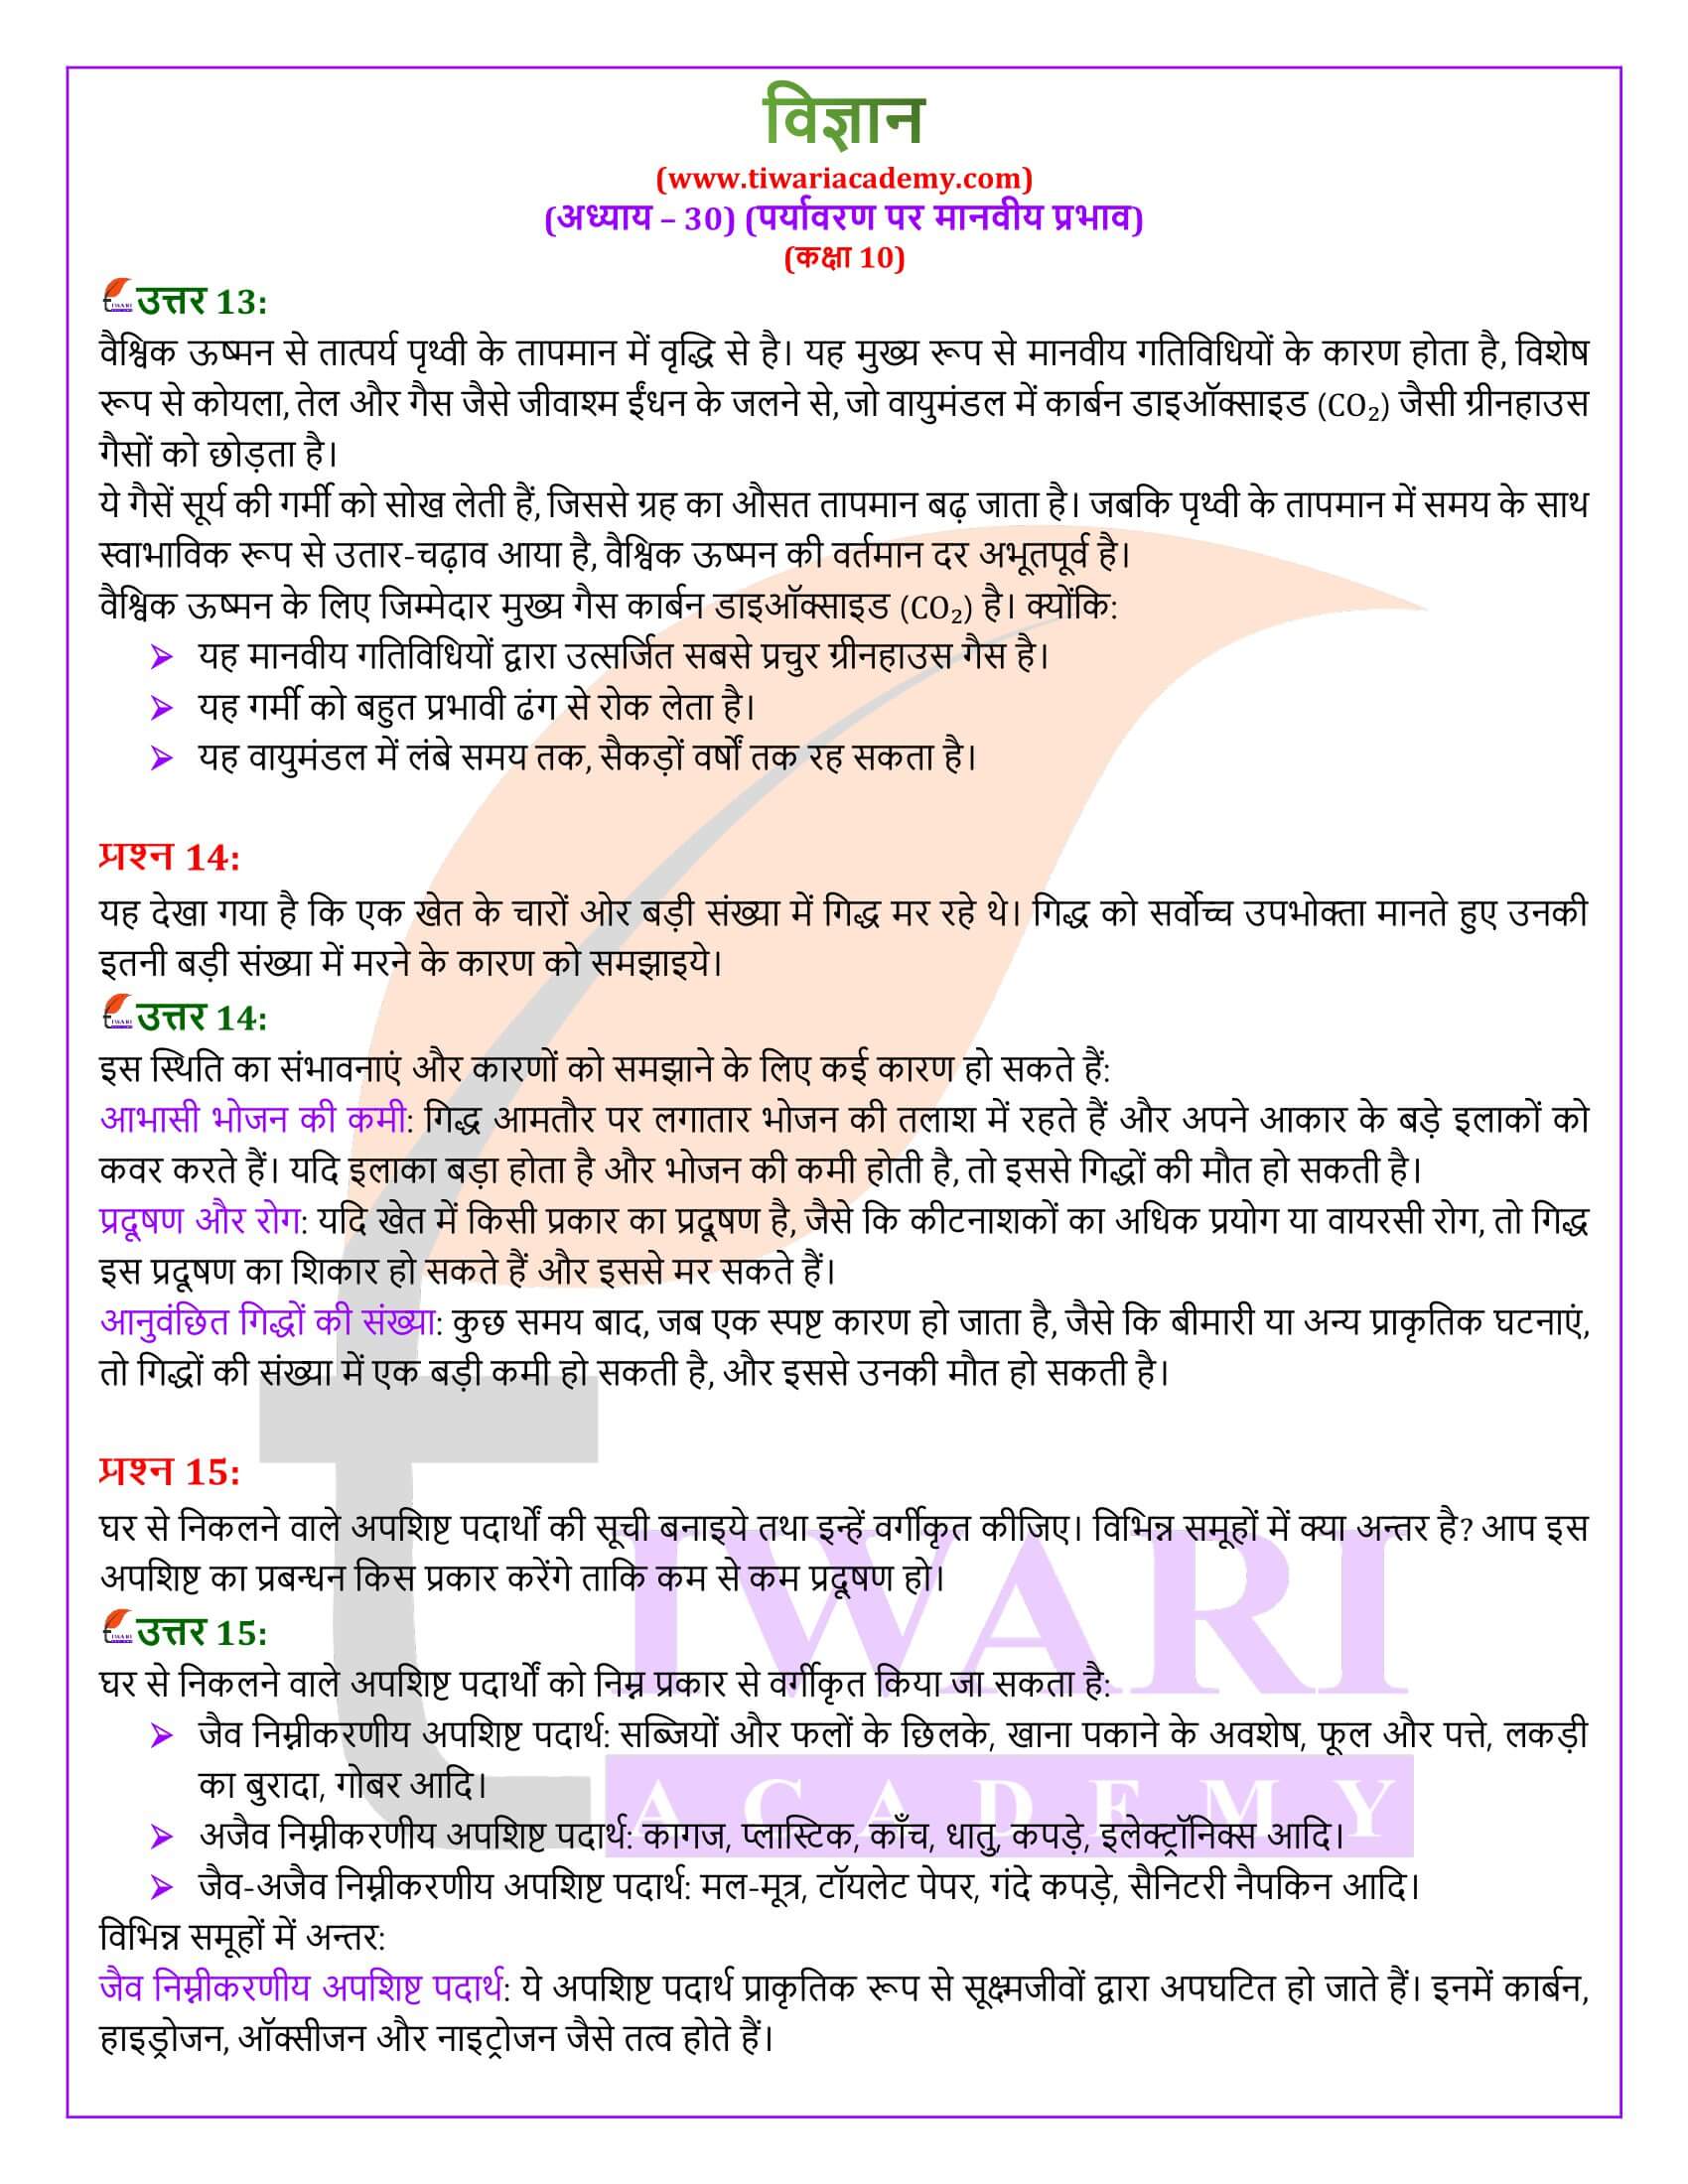 NIOS के लिए कक्षा 10 विज्ञान अध्याय 30 हिंदी मीडियम में